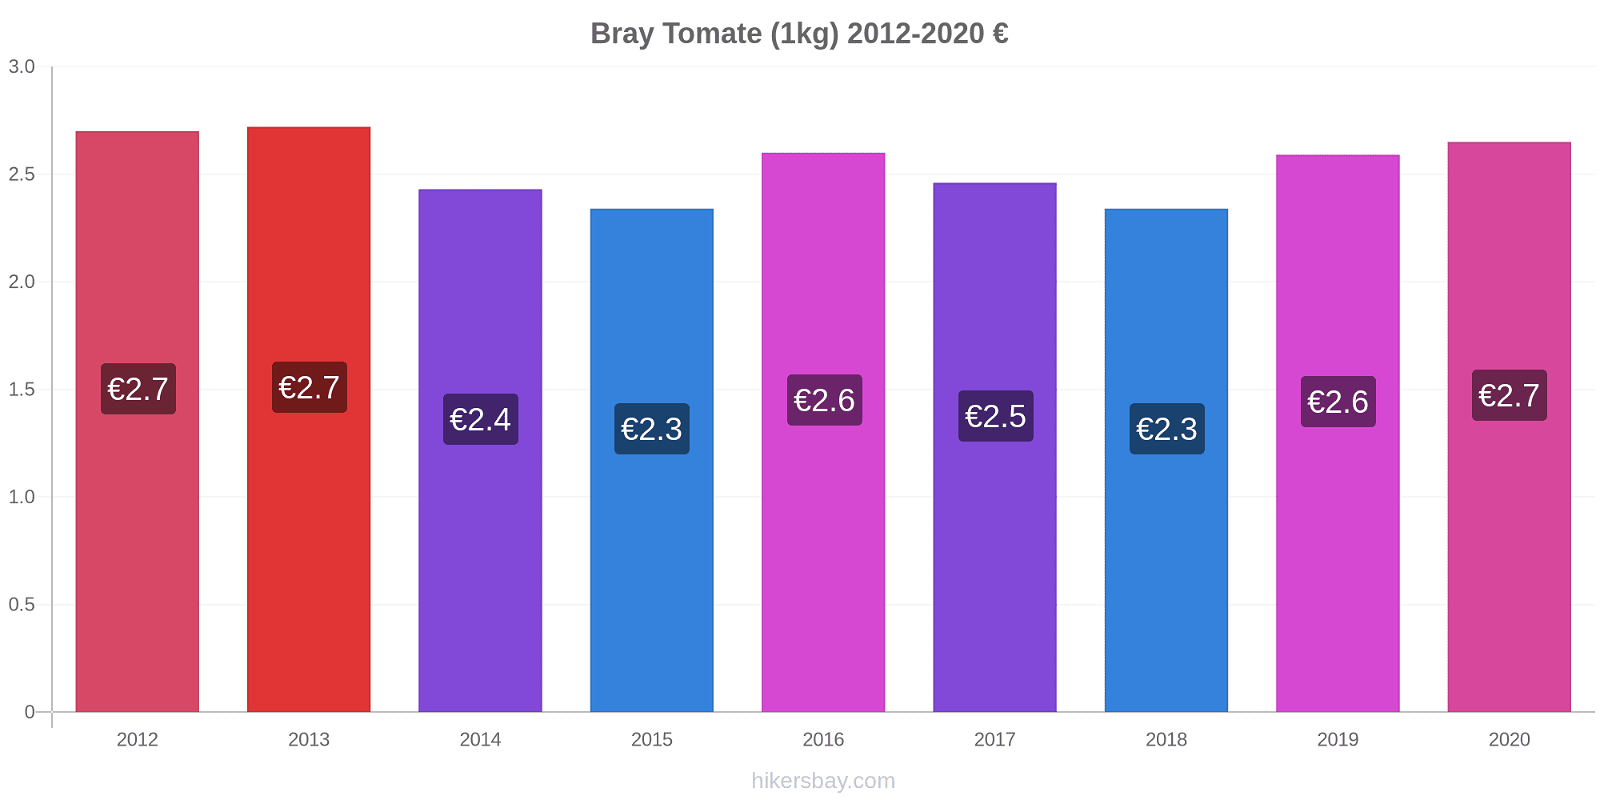 Bray changements de prix Tomate (1kg) hikersbay.com